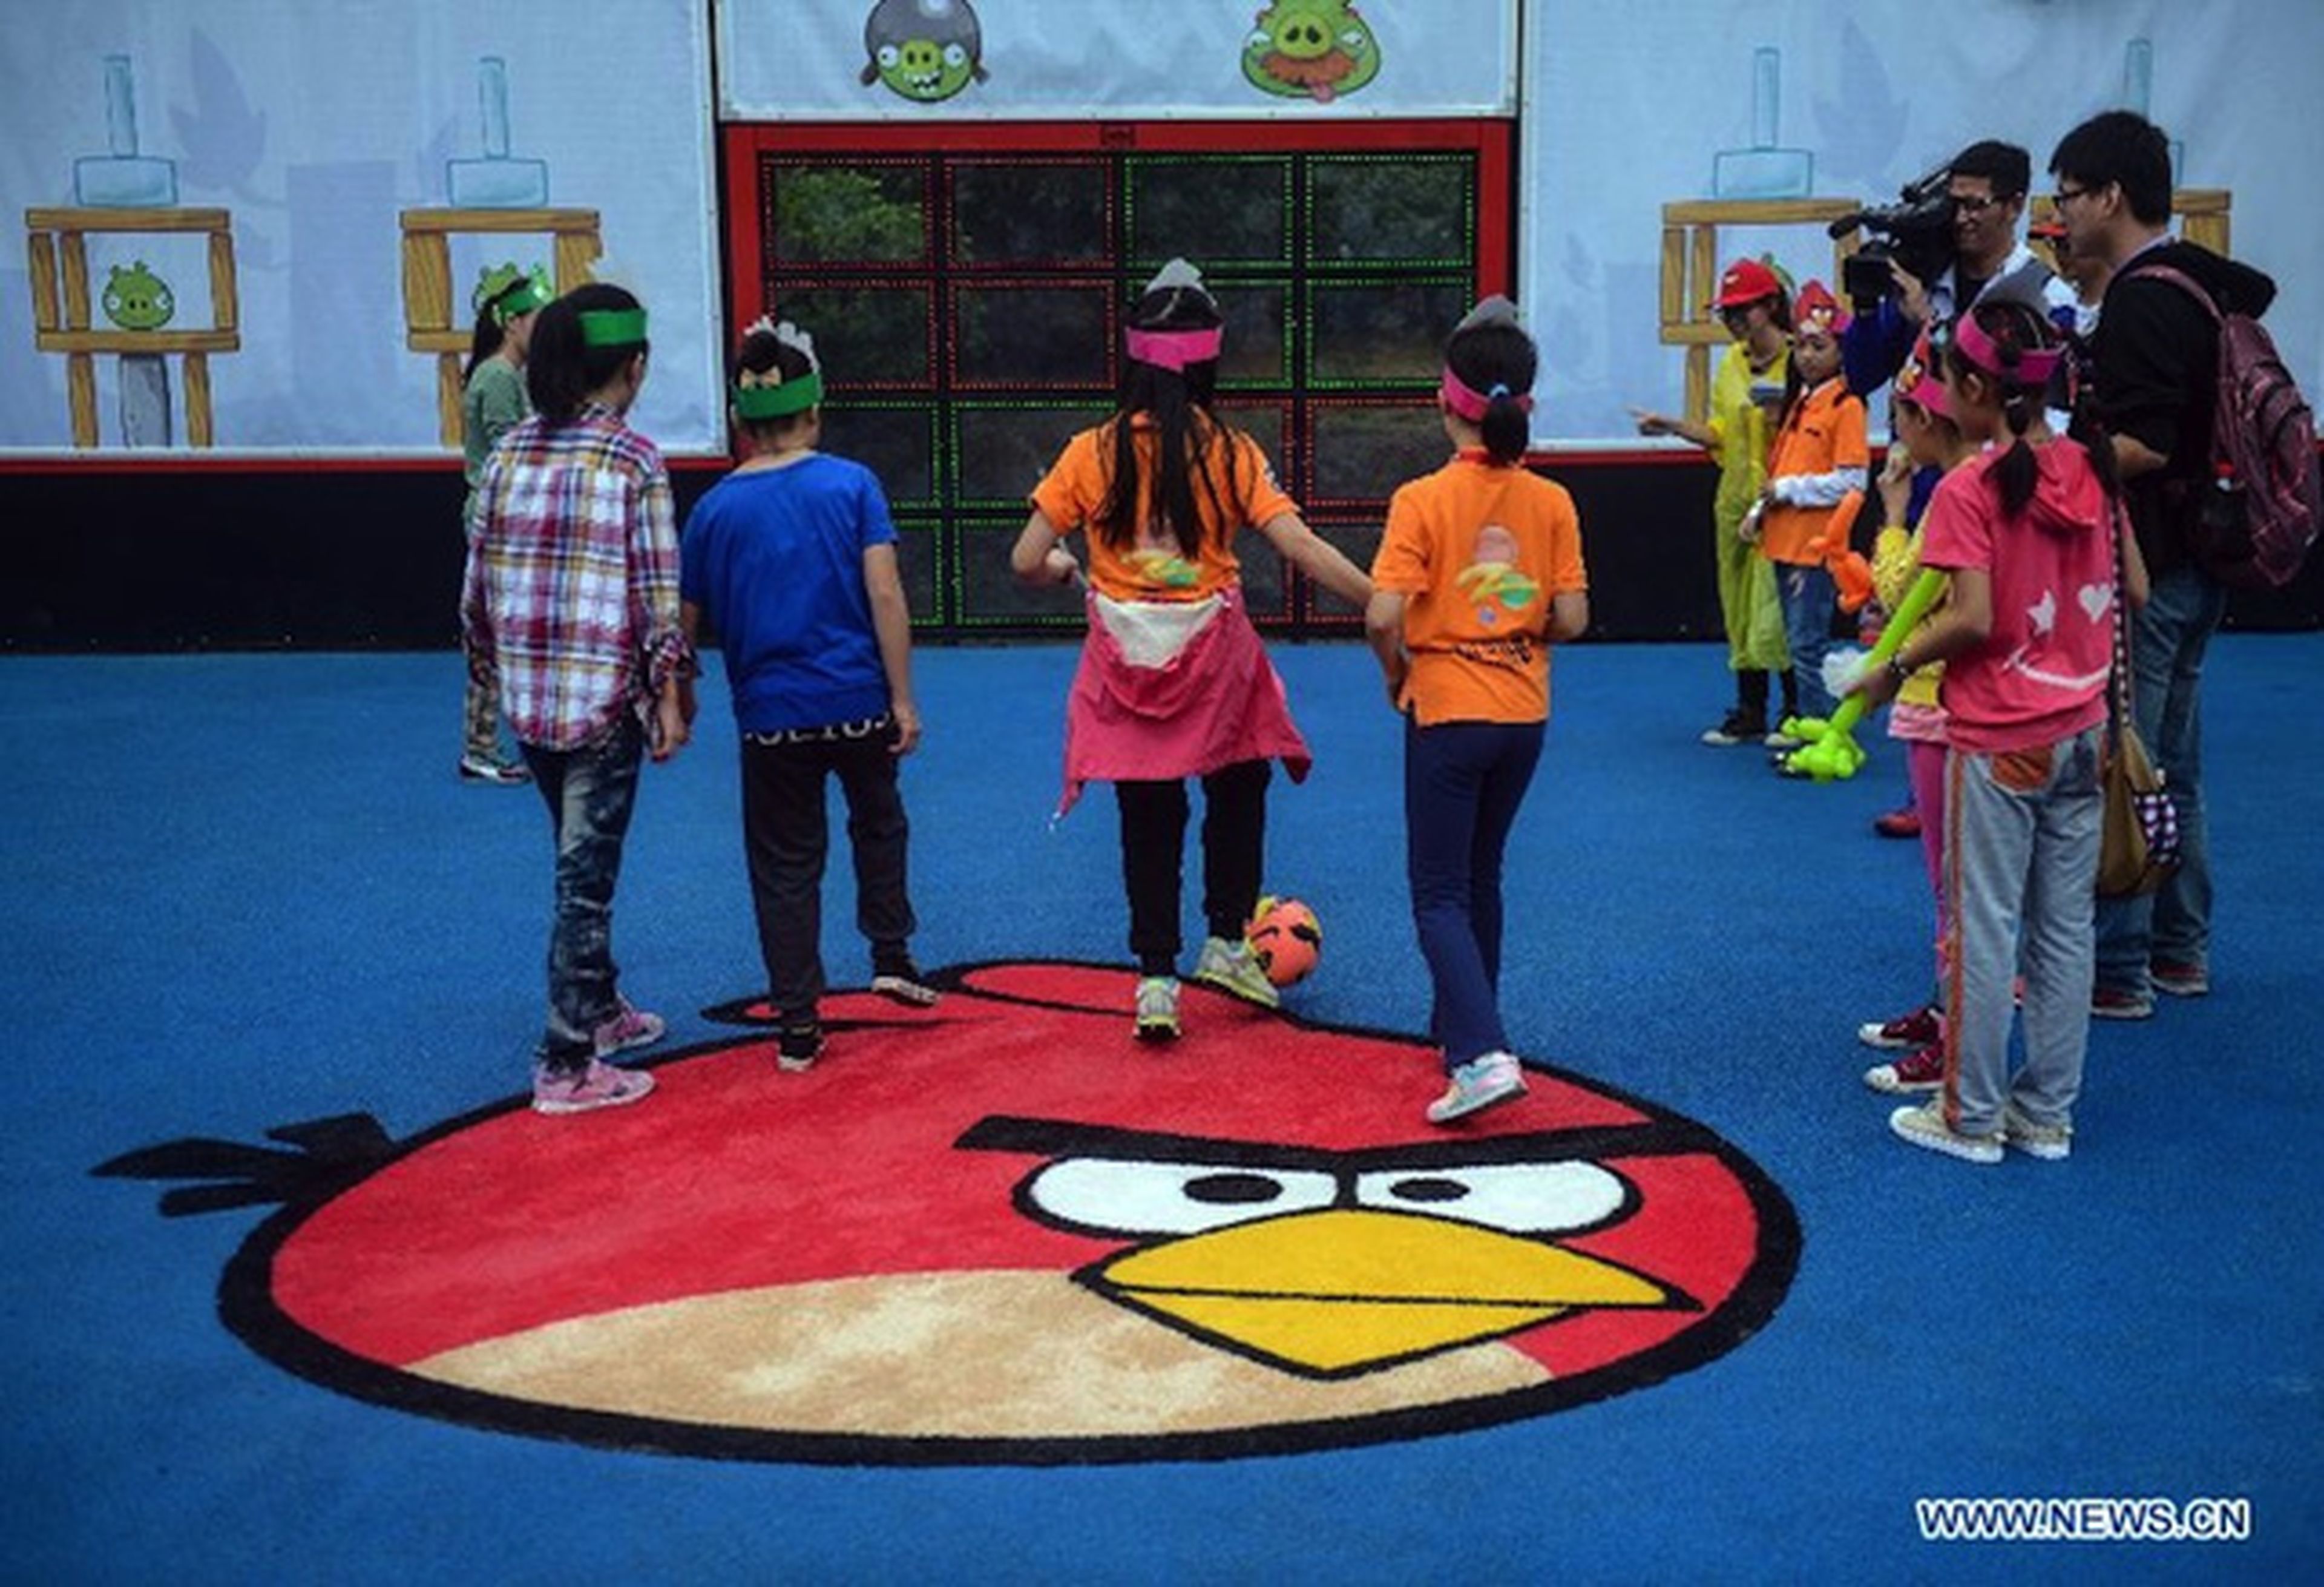 Abierto el parque temático de Angry Birds en China